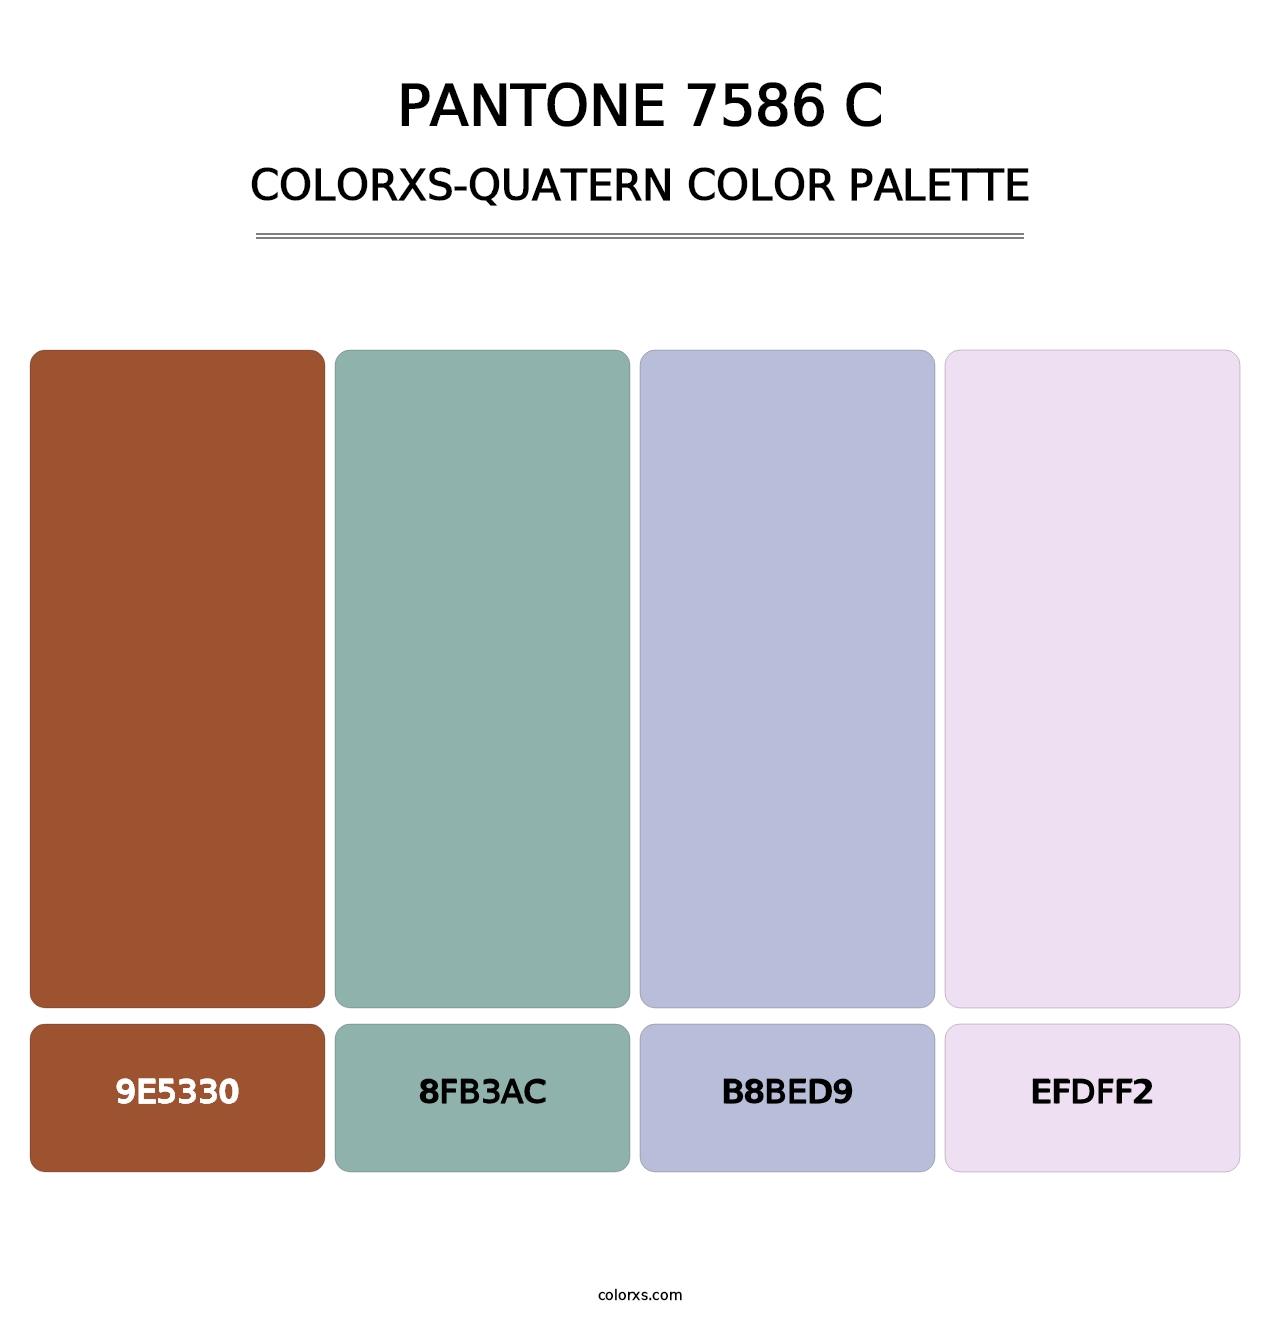 PANTONE 7586 C - Colorxs Quatern Palette